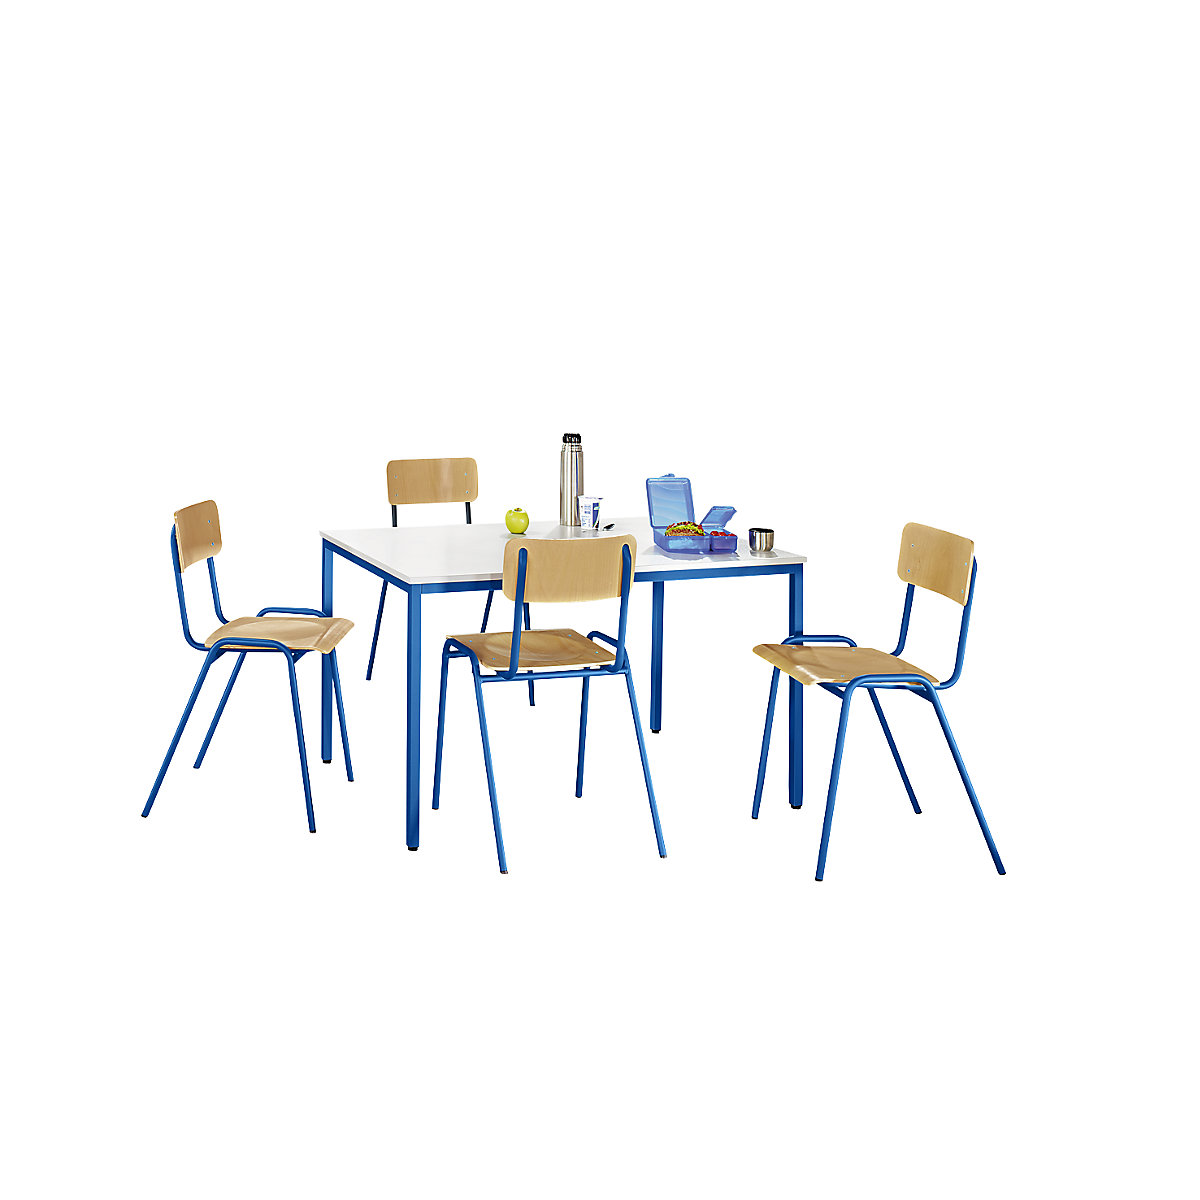 Višenamjenska garnitura za sjedenje – eurokraft basic, 1 stol, 4 stolice, ploča stola u svijetlosivoj boji, postolje u encijan plavoj boji-5